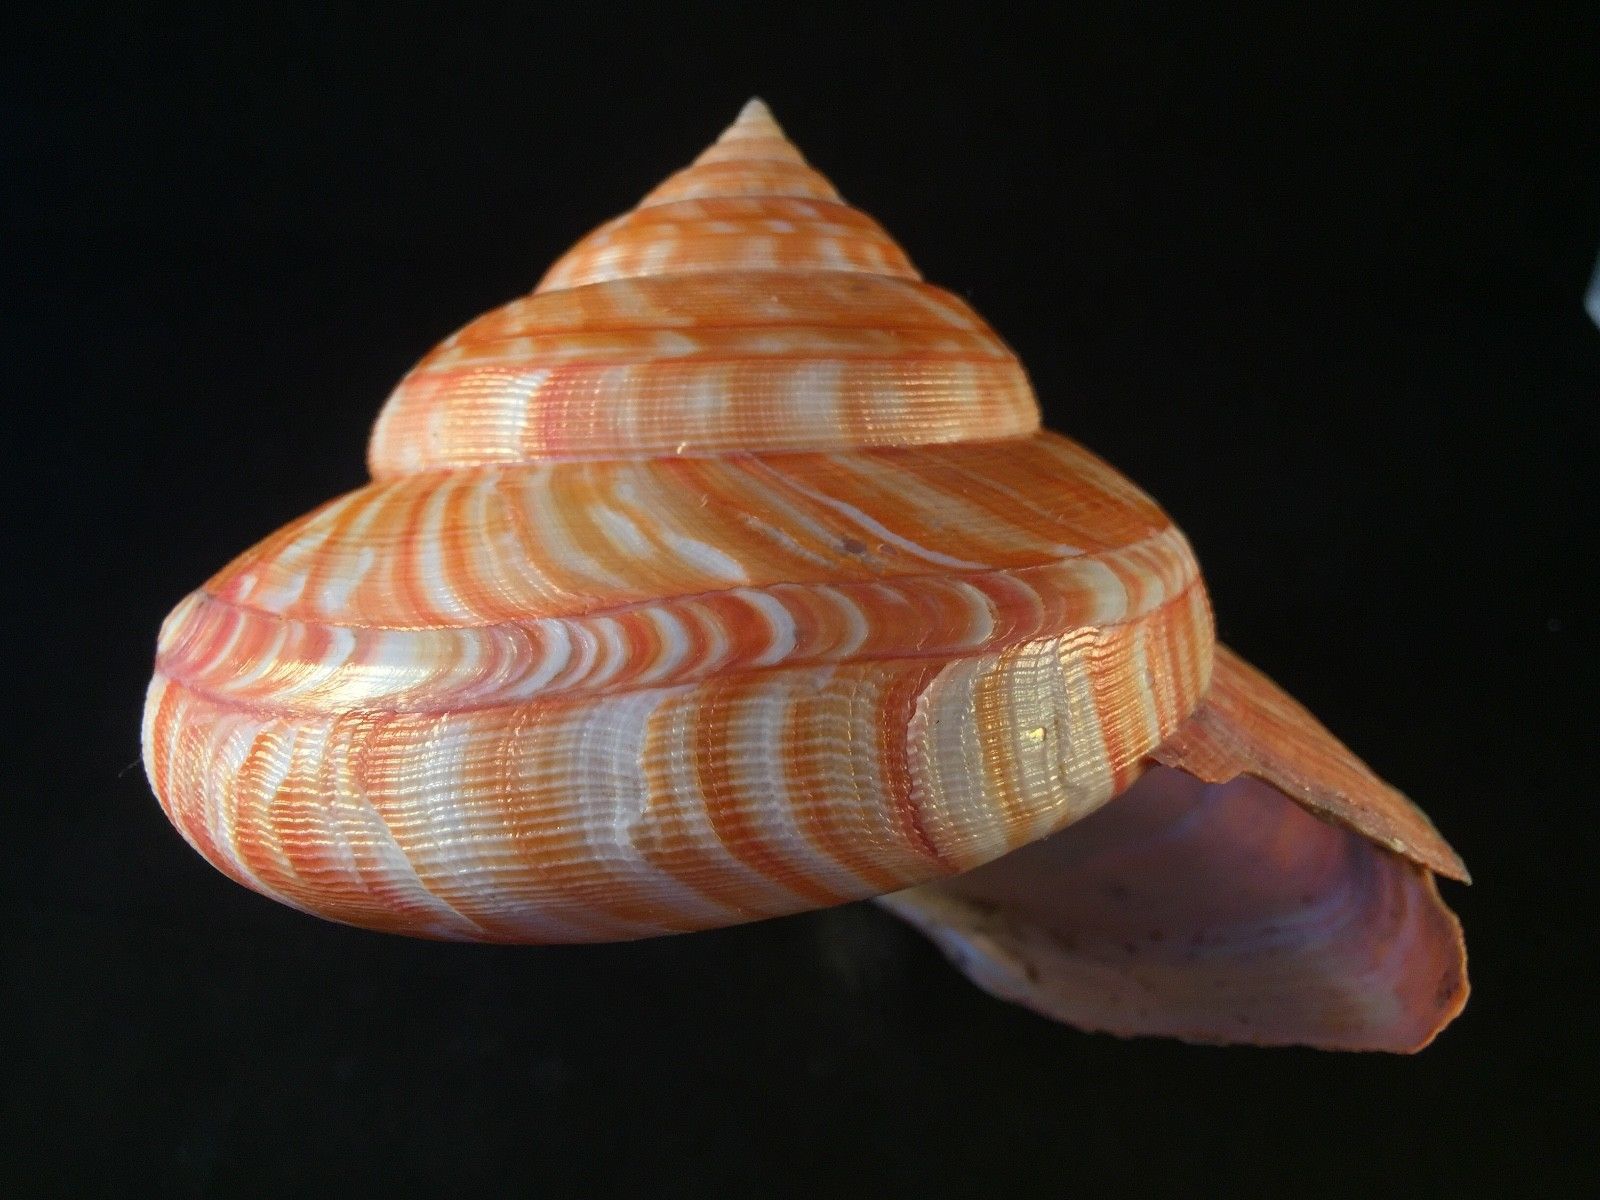 Лучевая симметрия моллюсков